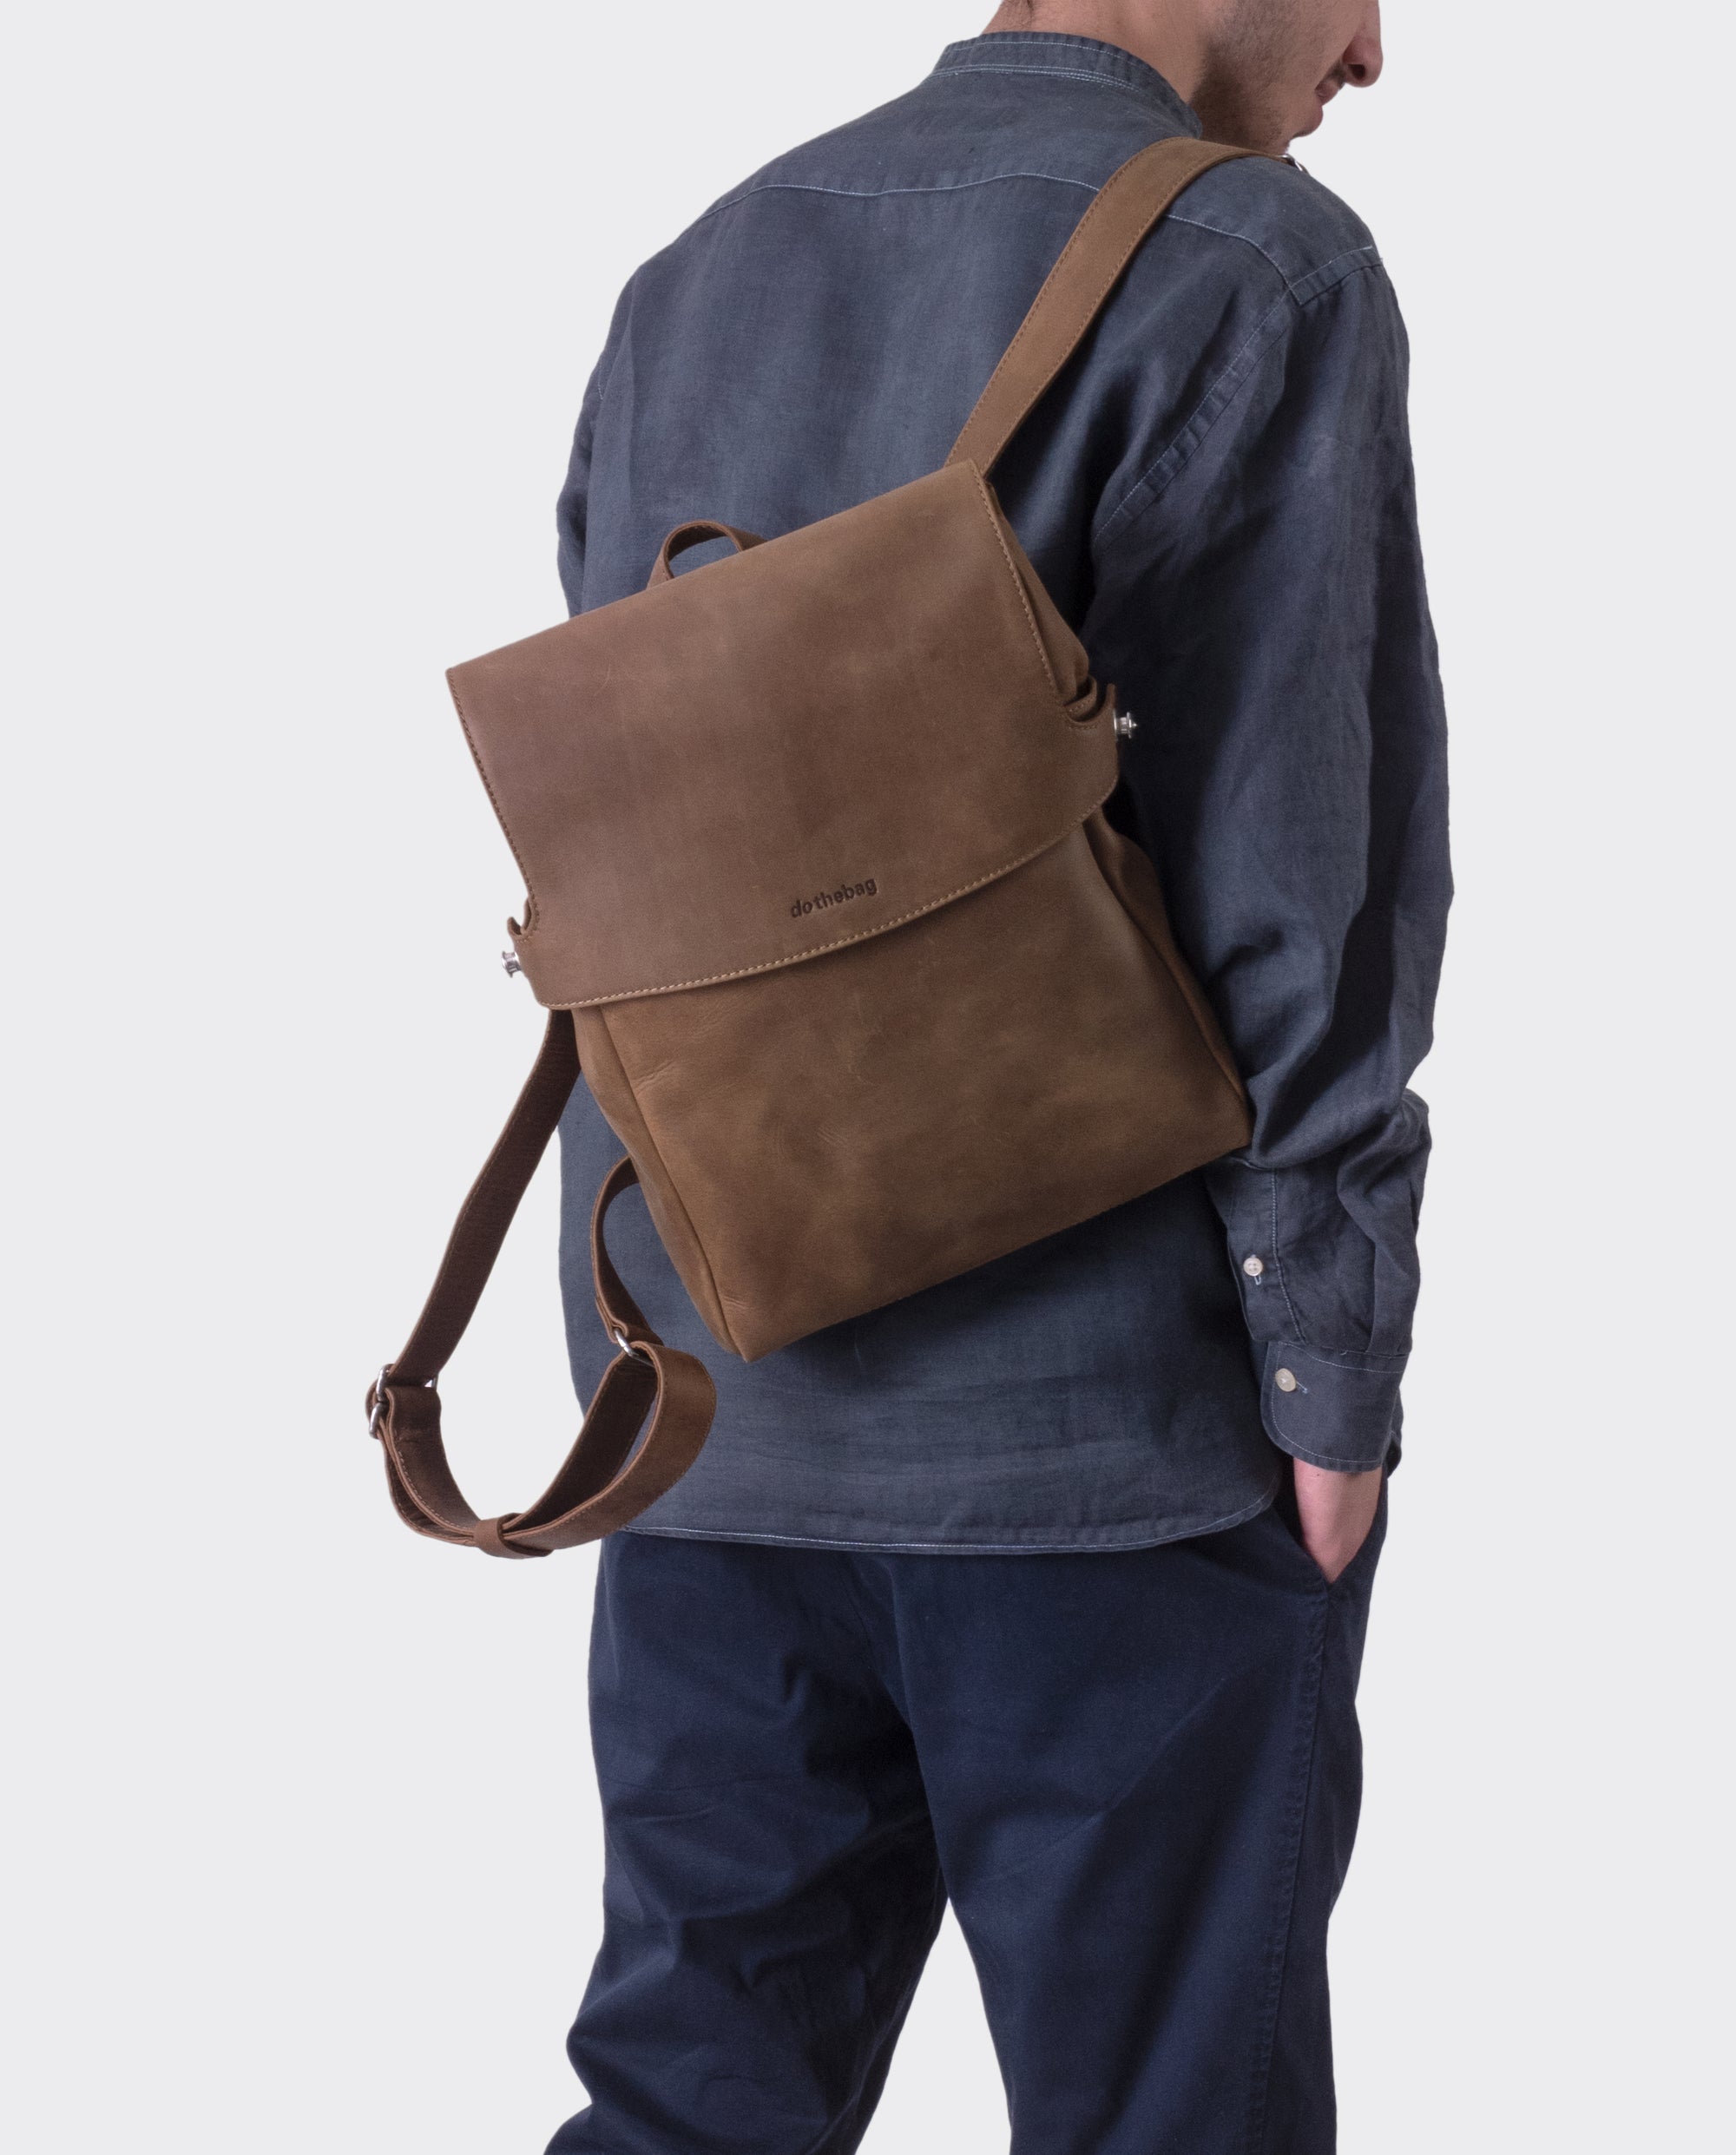 Raboison raboisonbag toro backpack